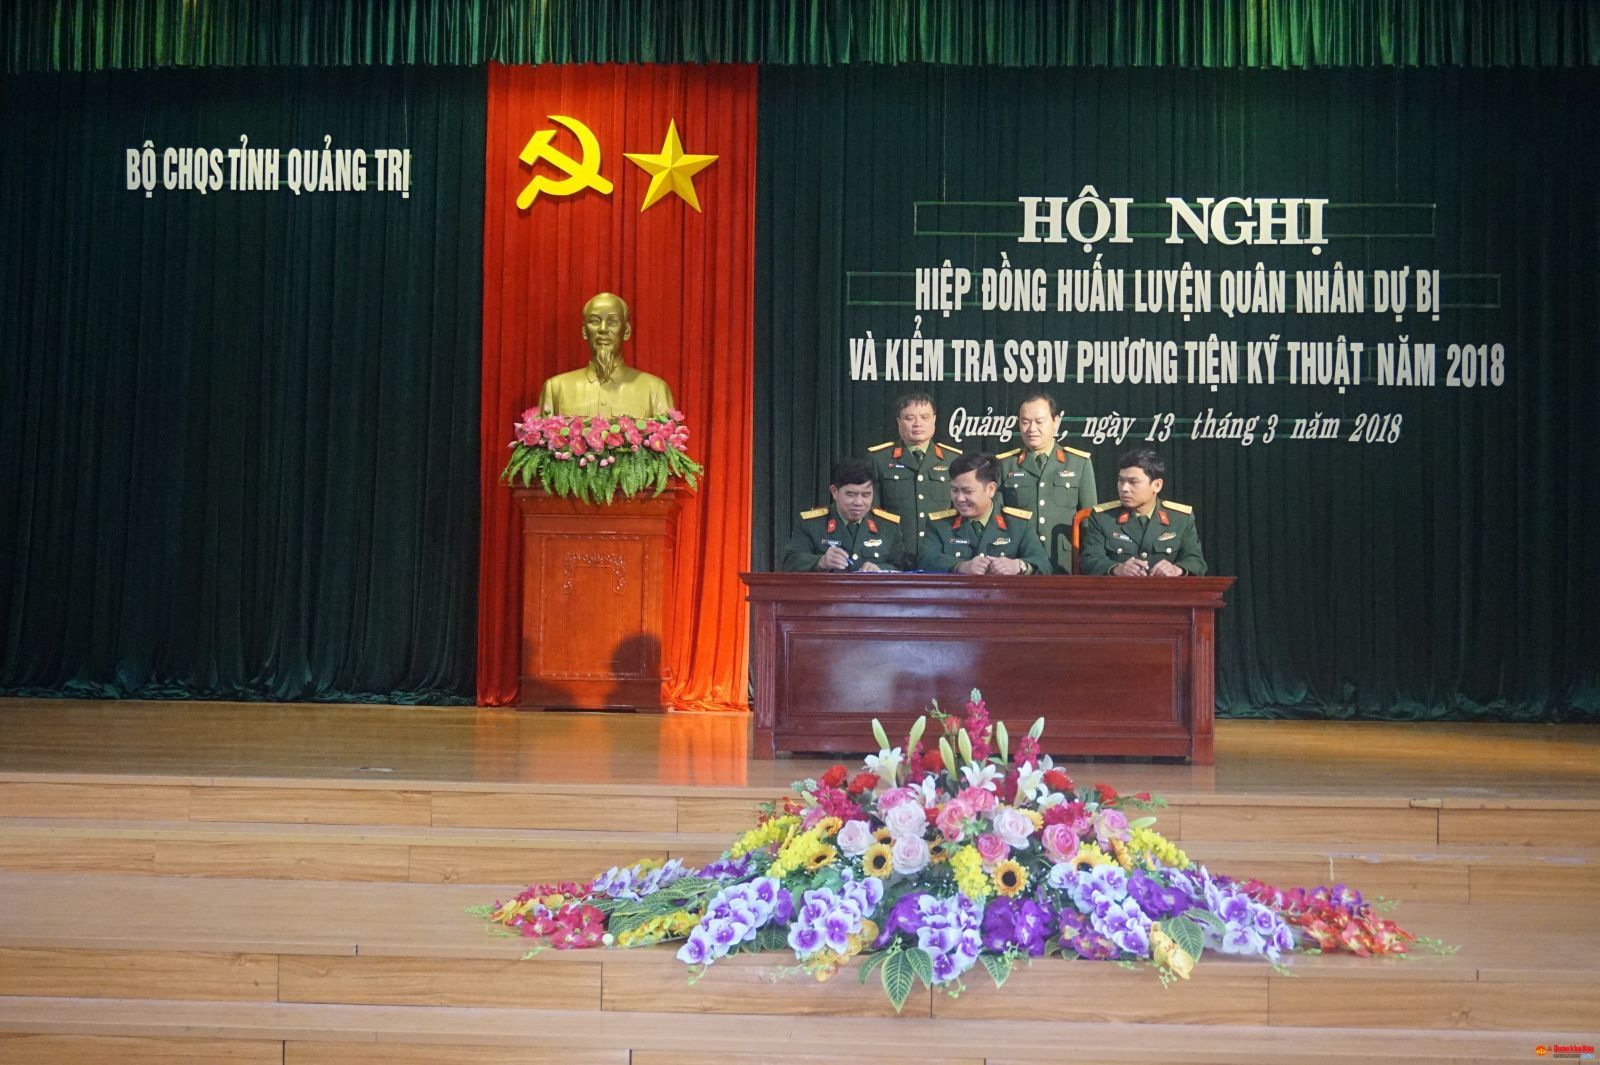 Bộ CHQS tỉnh Quảng Trị tổ chức hiệp đồng huấn luyện, kiểm tra sẵn sàng động viên quân nhân dự bị và phương tiện kỹ thuật năm 2018